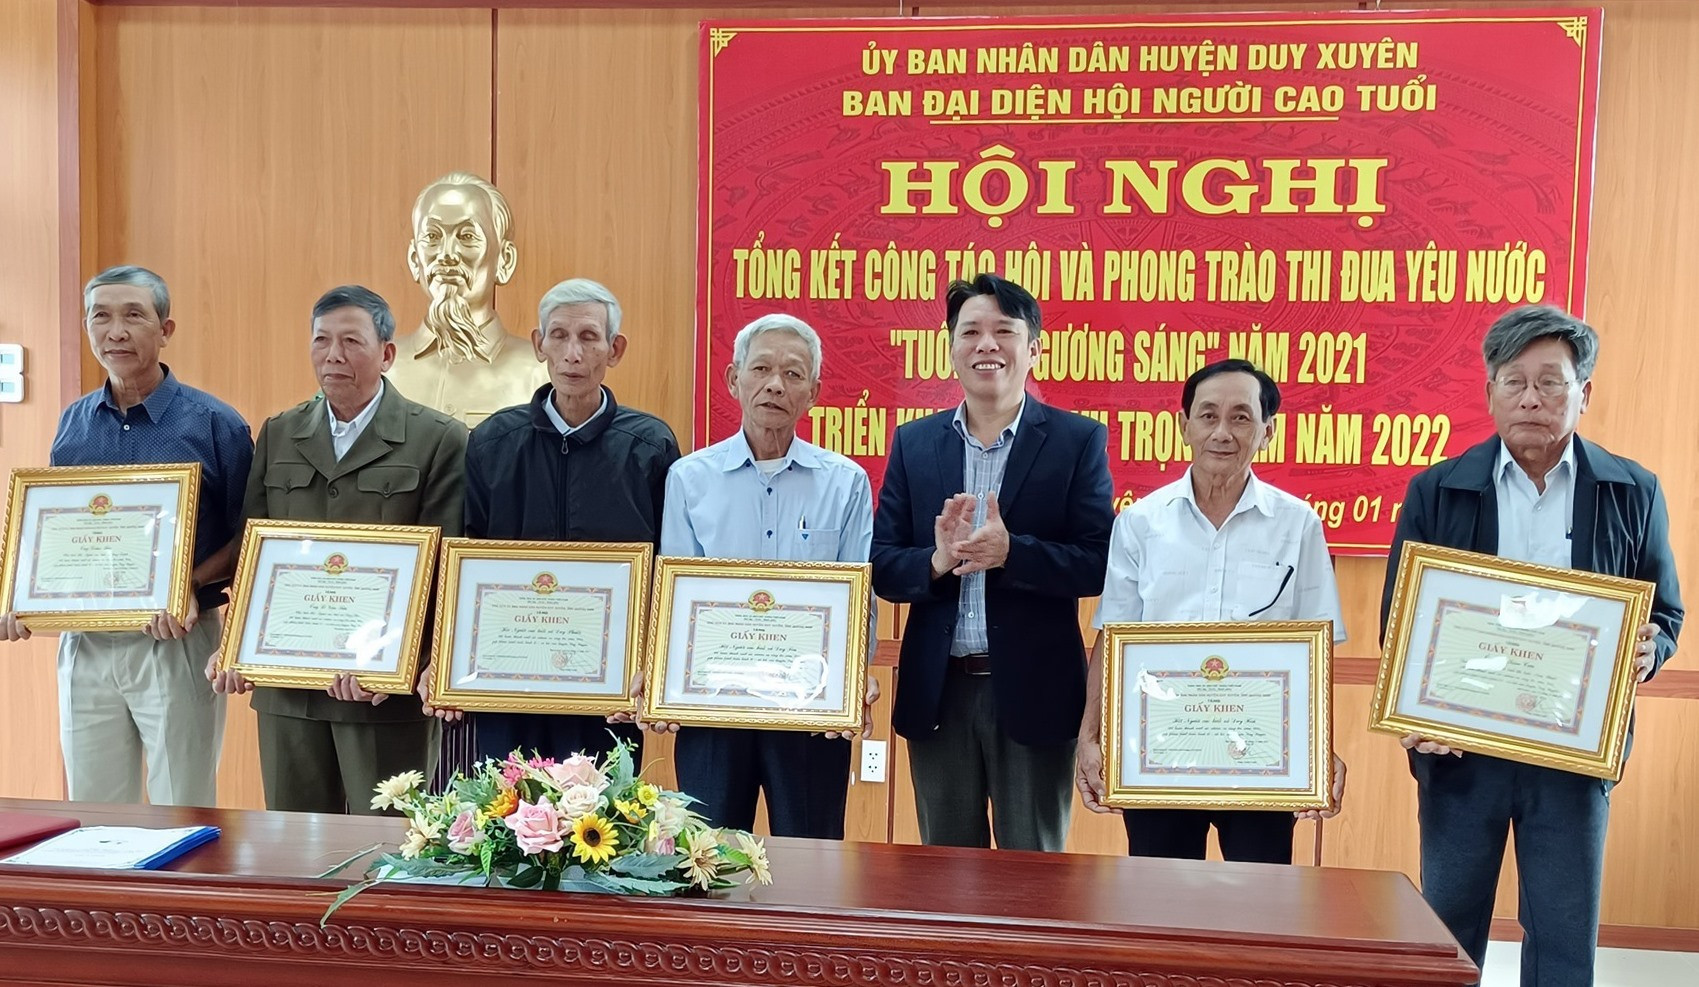 UBND huyện Duy Xuyên khen thưởng các tập thể cá nhân có thành tích xuất sắc trong phong trào “Tuổi cao gương sáng” năm 2021.